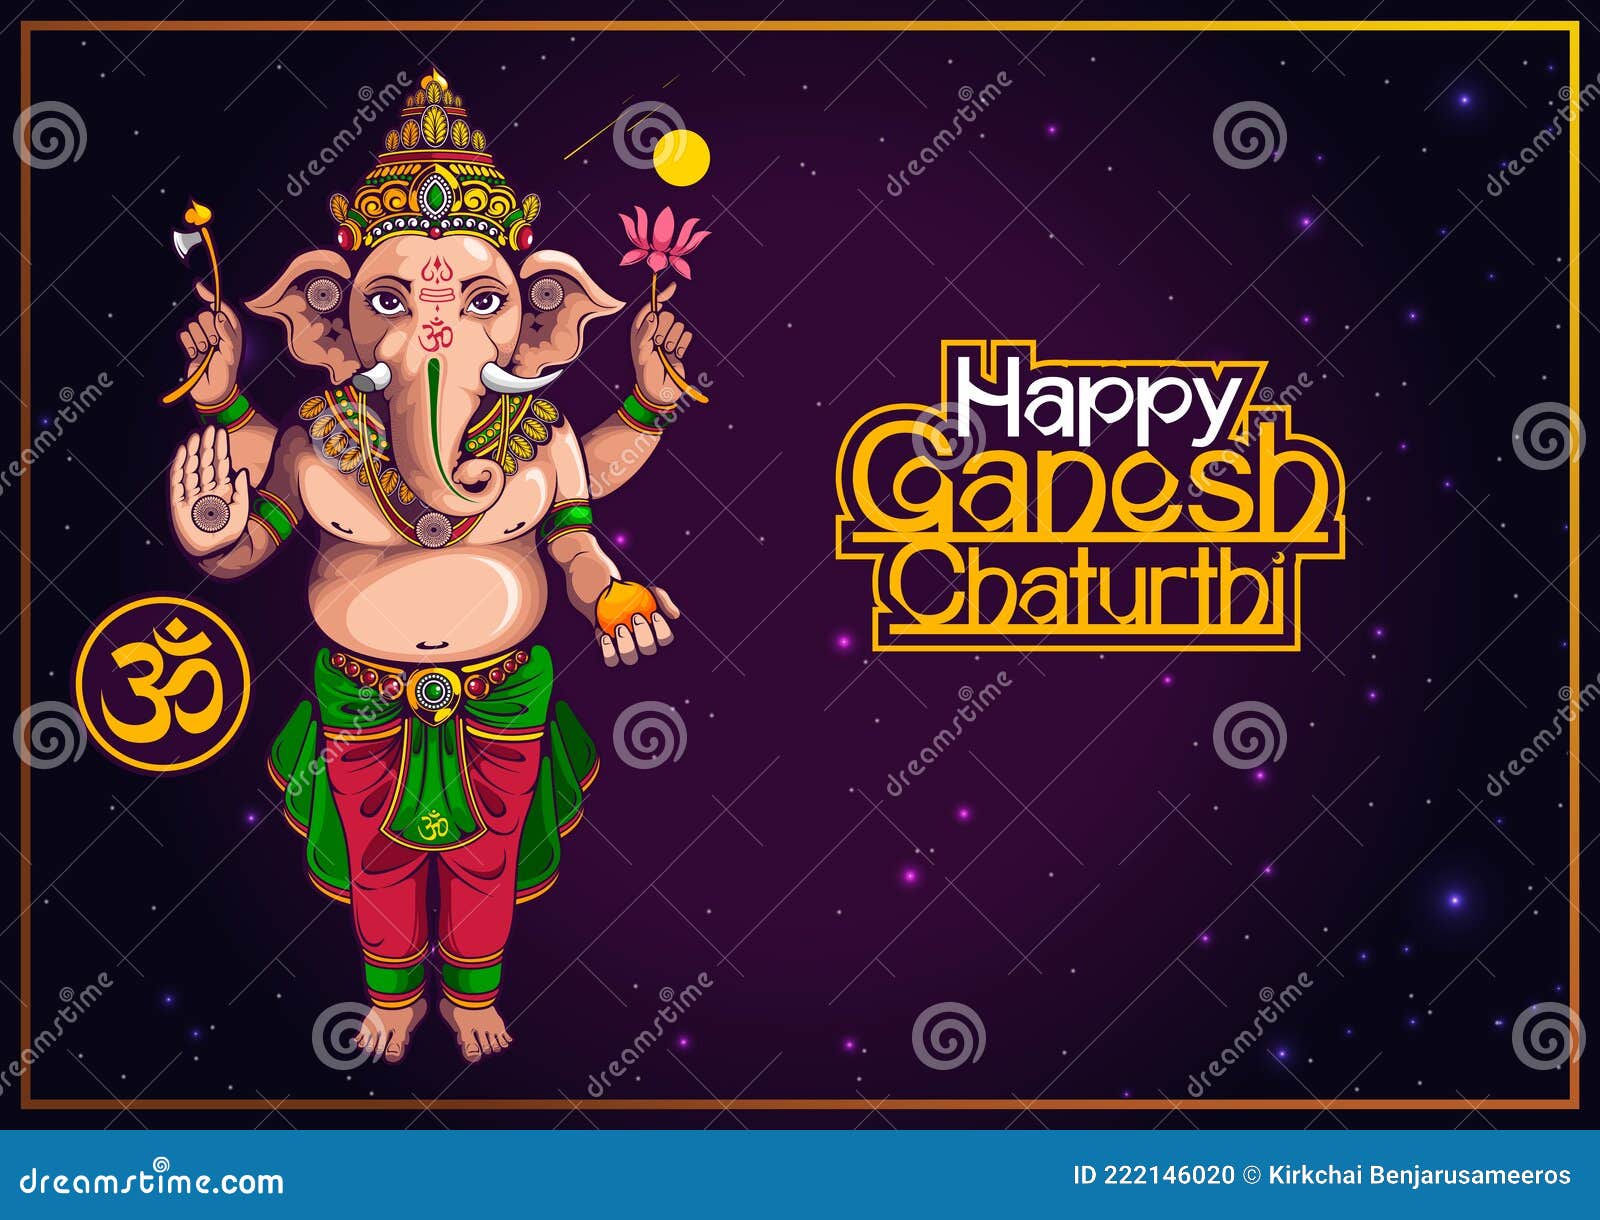 Happy Ganesh Chaturthi 39 stock vector. Illustration of ceremony - 222146020